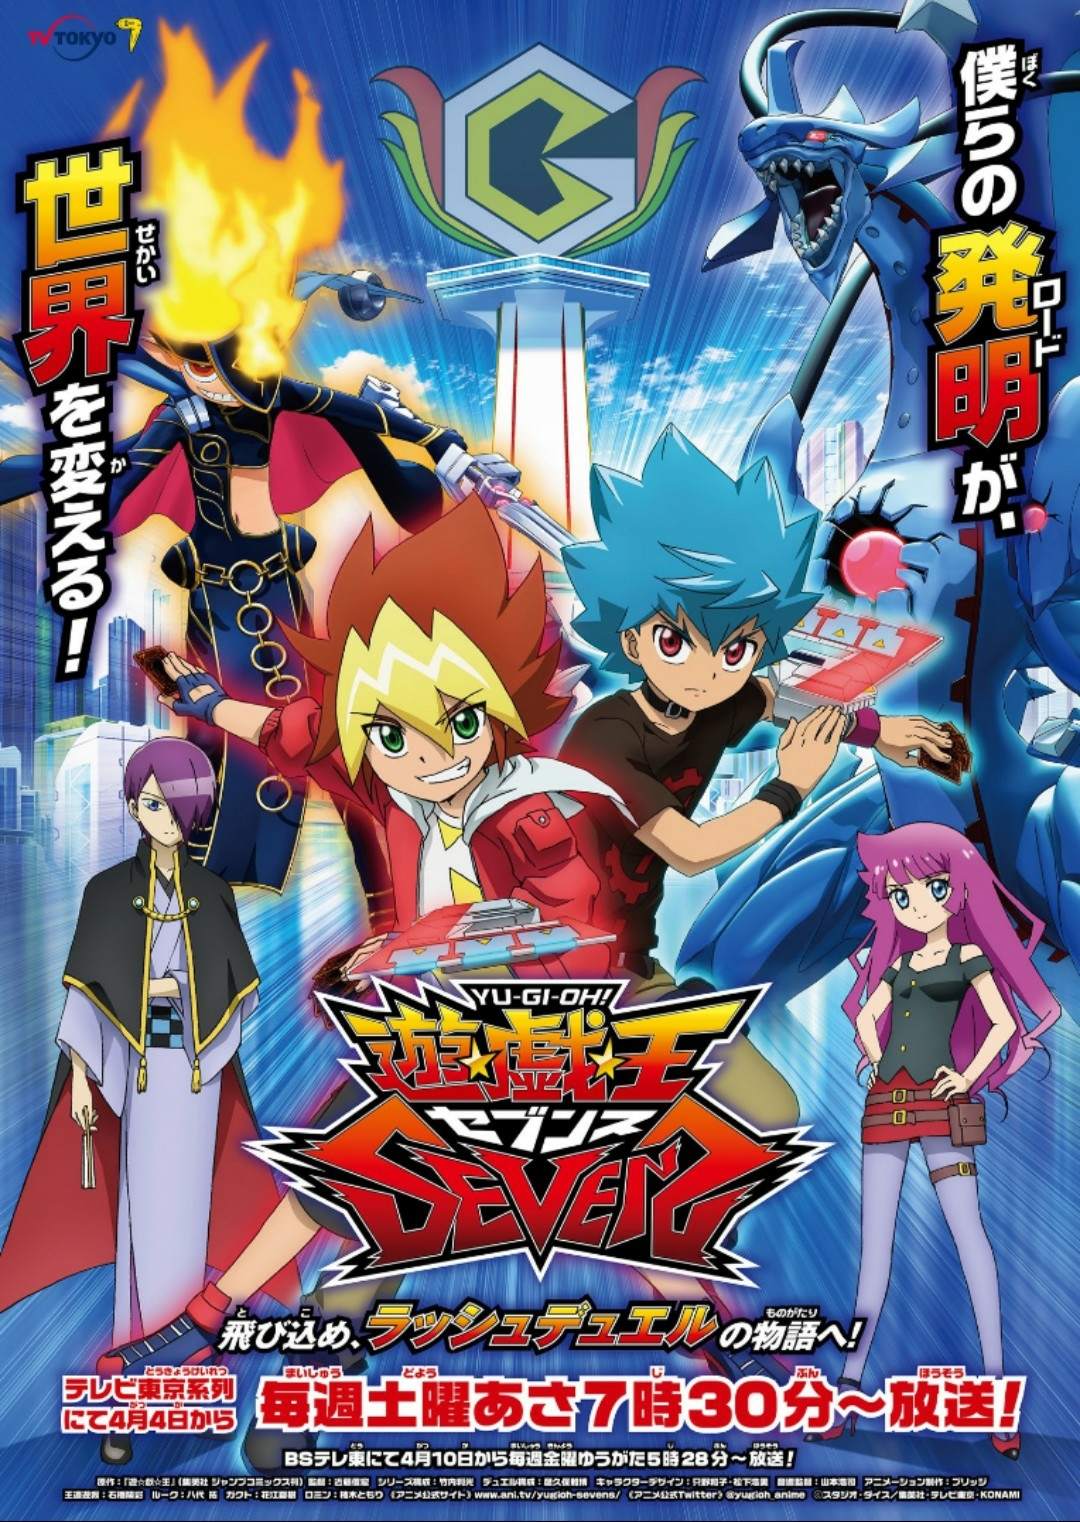 Yu-Gi-Oh! Sevens anime udskyder produktionen på grund af COVID-19